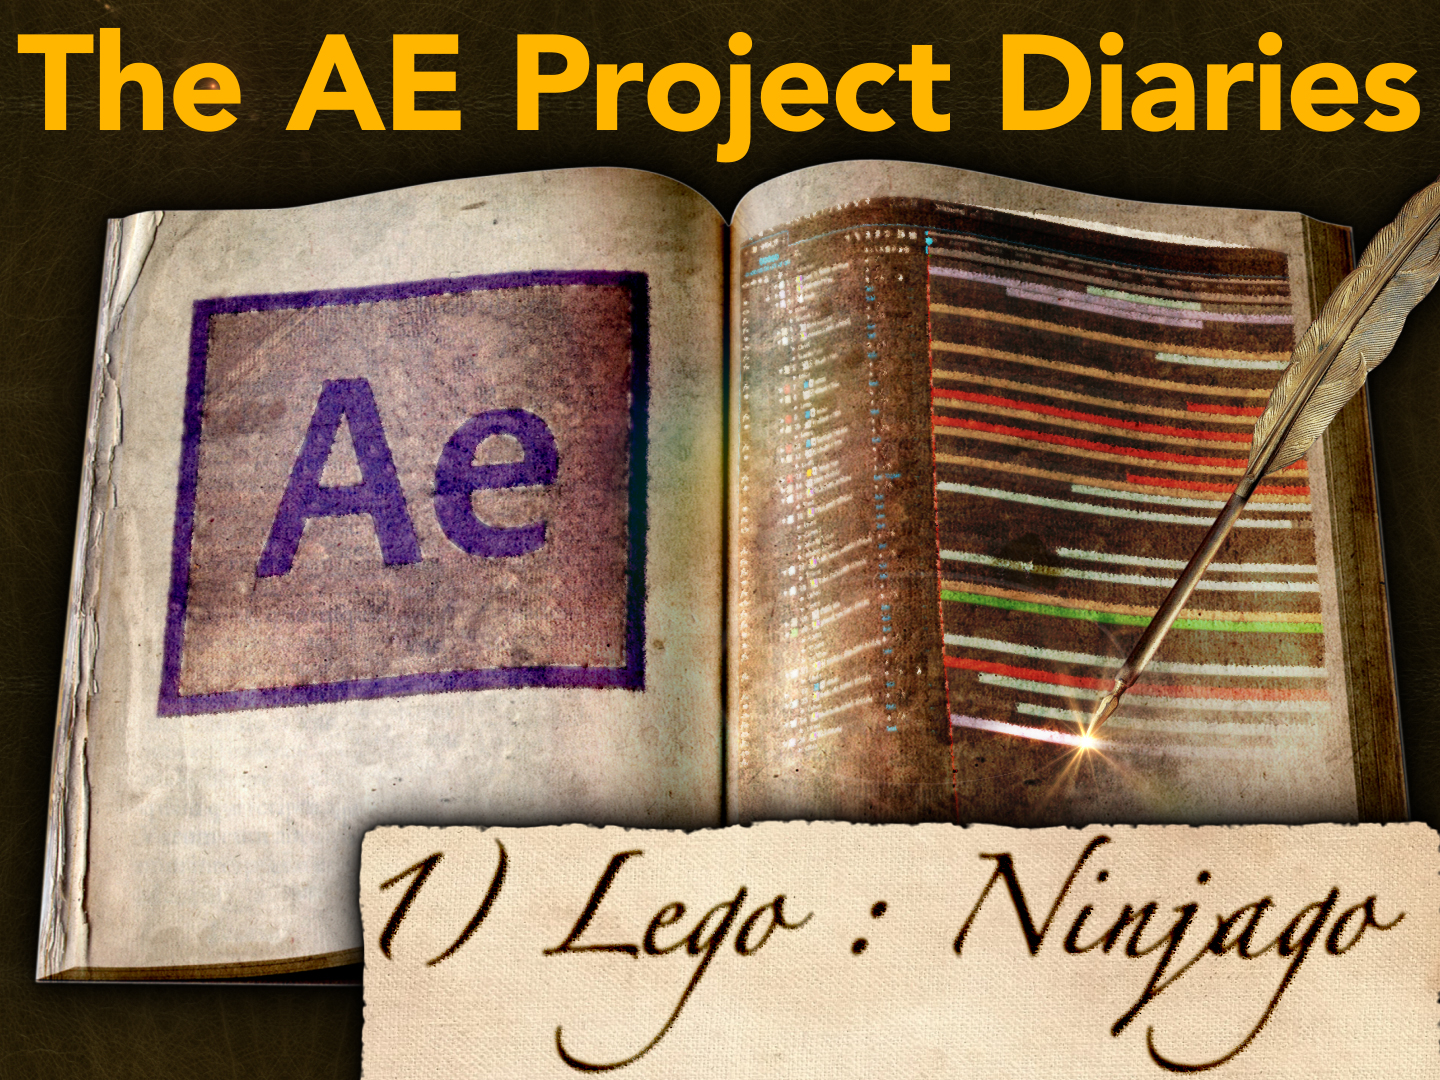 AE Project Diary: 1) Lego, Ninjago 18